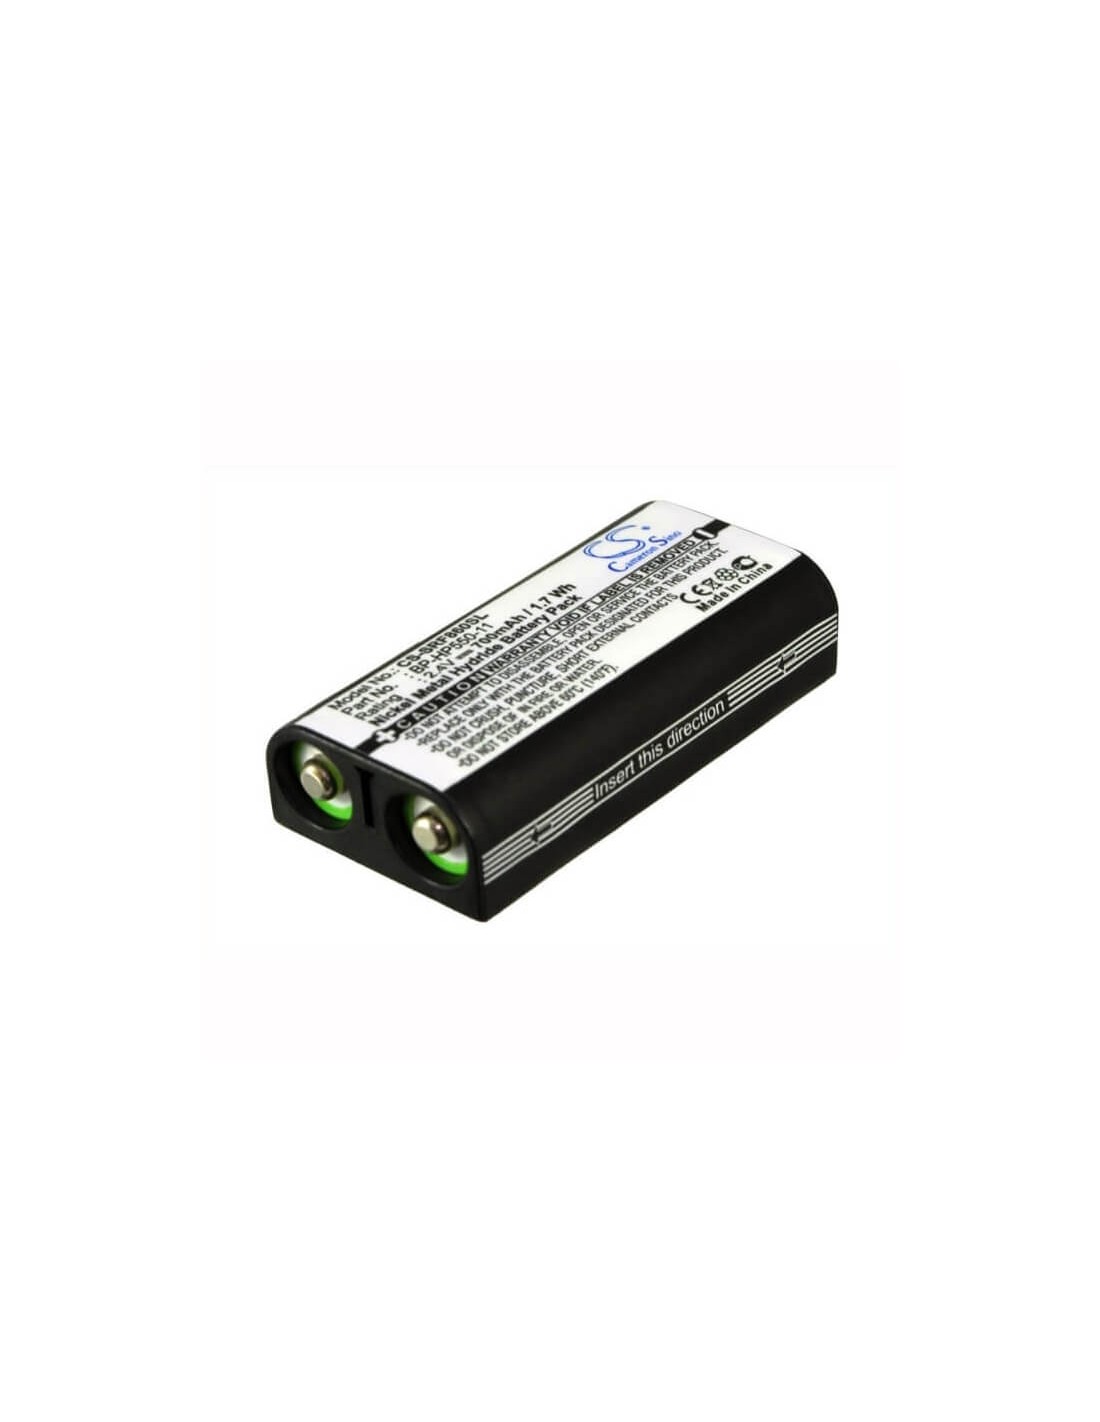 Battery for Sony Mdr-rf860, Mdr-rf4000, Mdr-rf970 2.4V, 700mAh - 1.68Wh